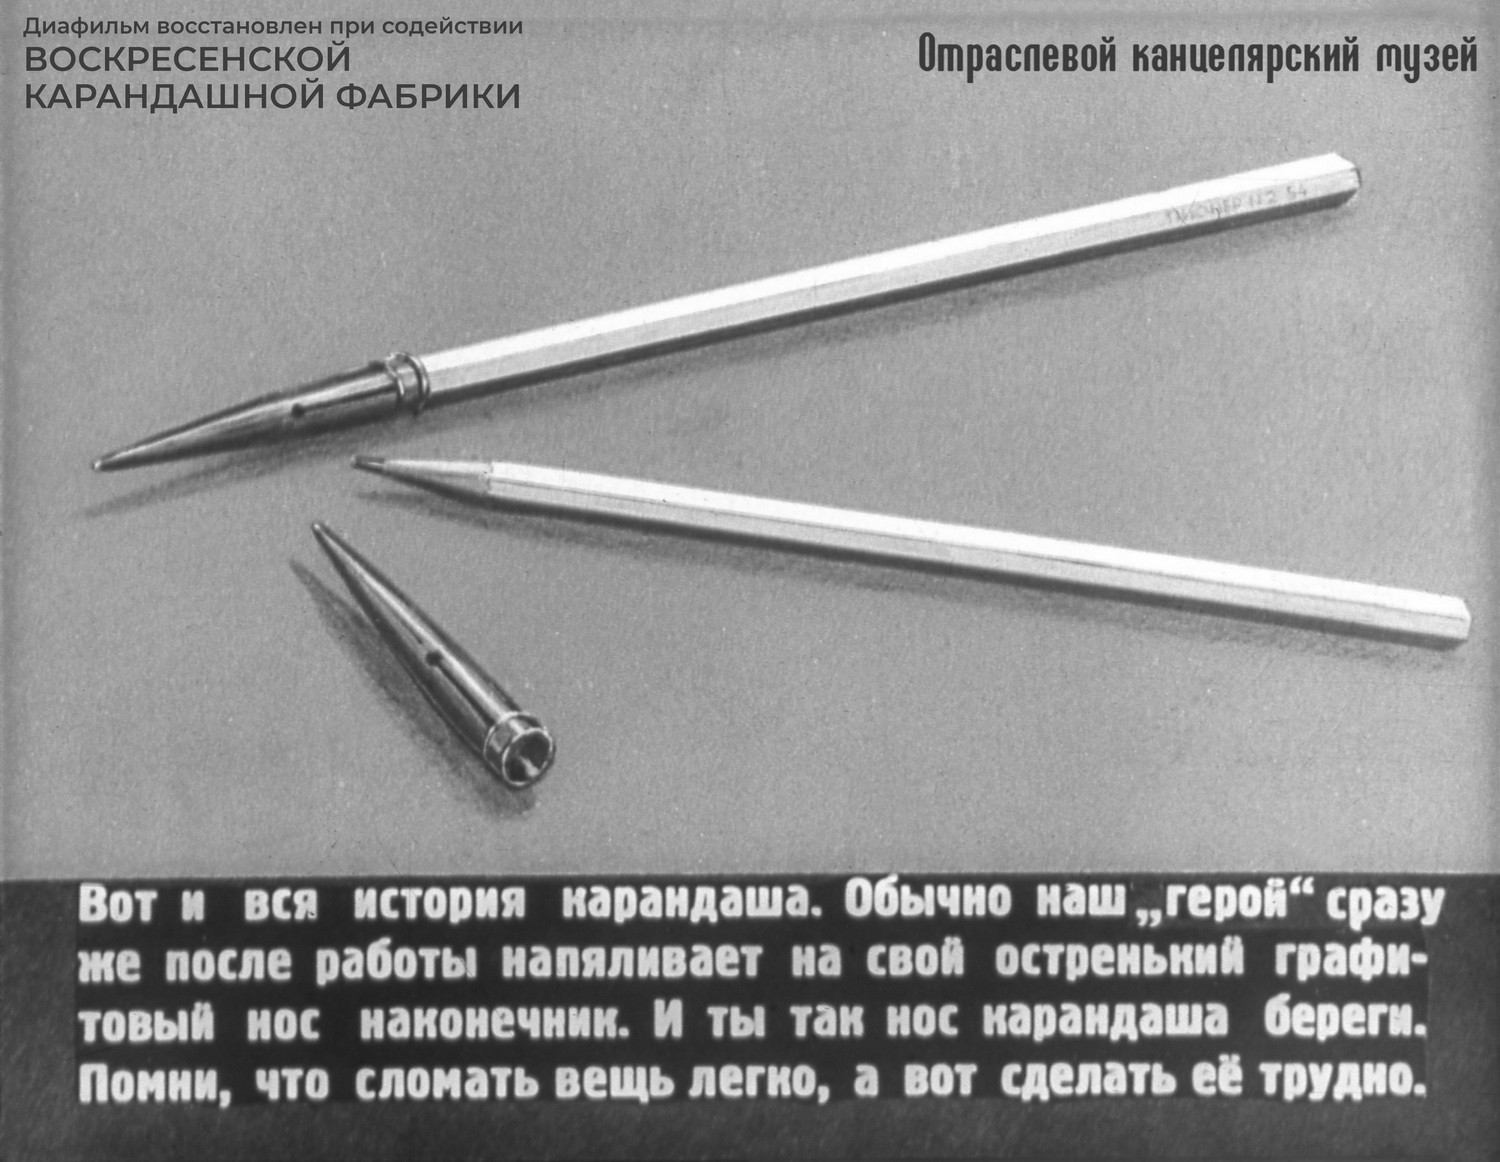 Сейчас такие наконечники для карандашей не используются.